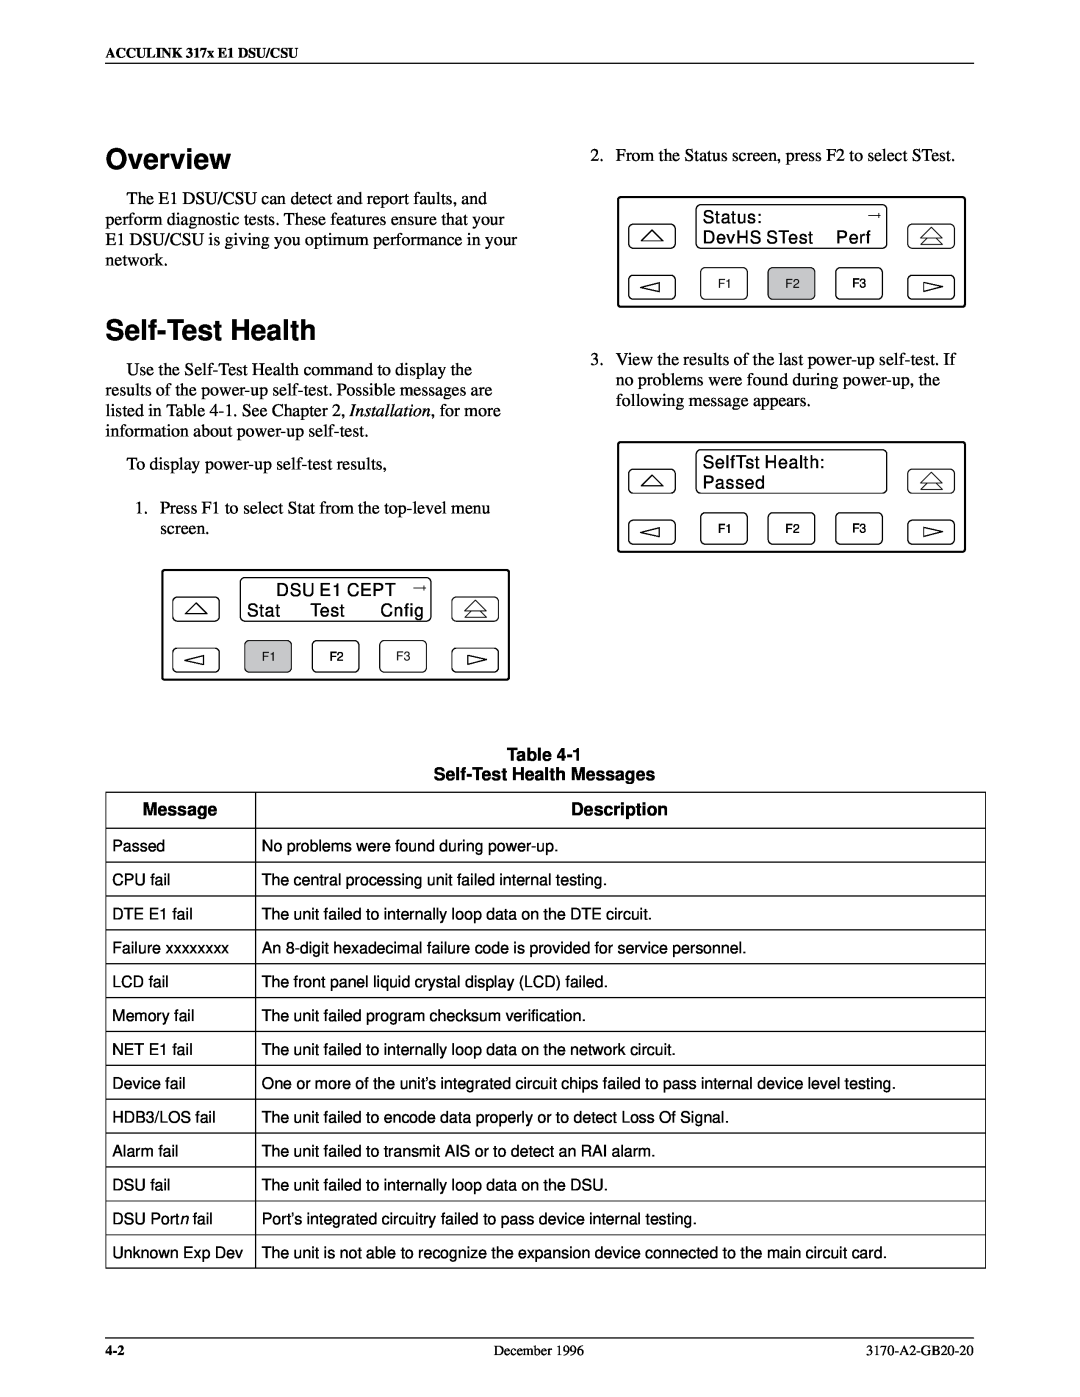 Paradyne 317x E1 manual Self-Test Health Messages, Description, Overview 